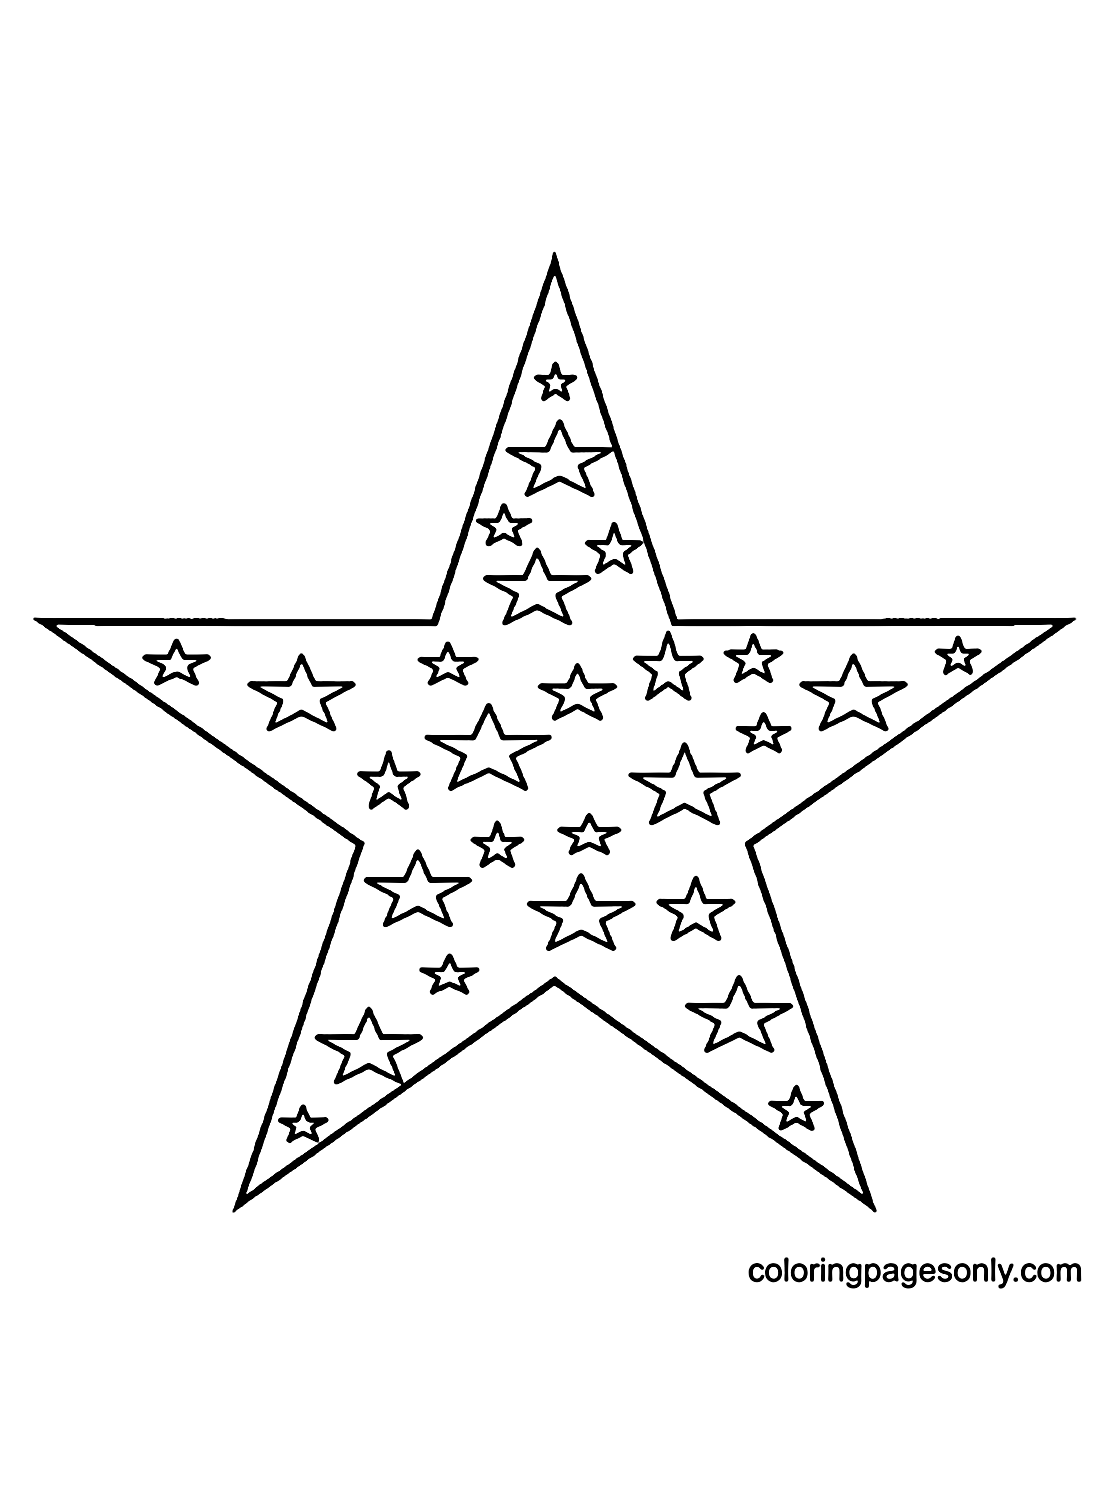 一颗大星星和星星里面的小星星